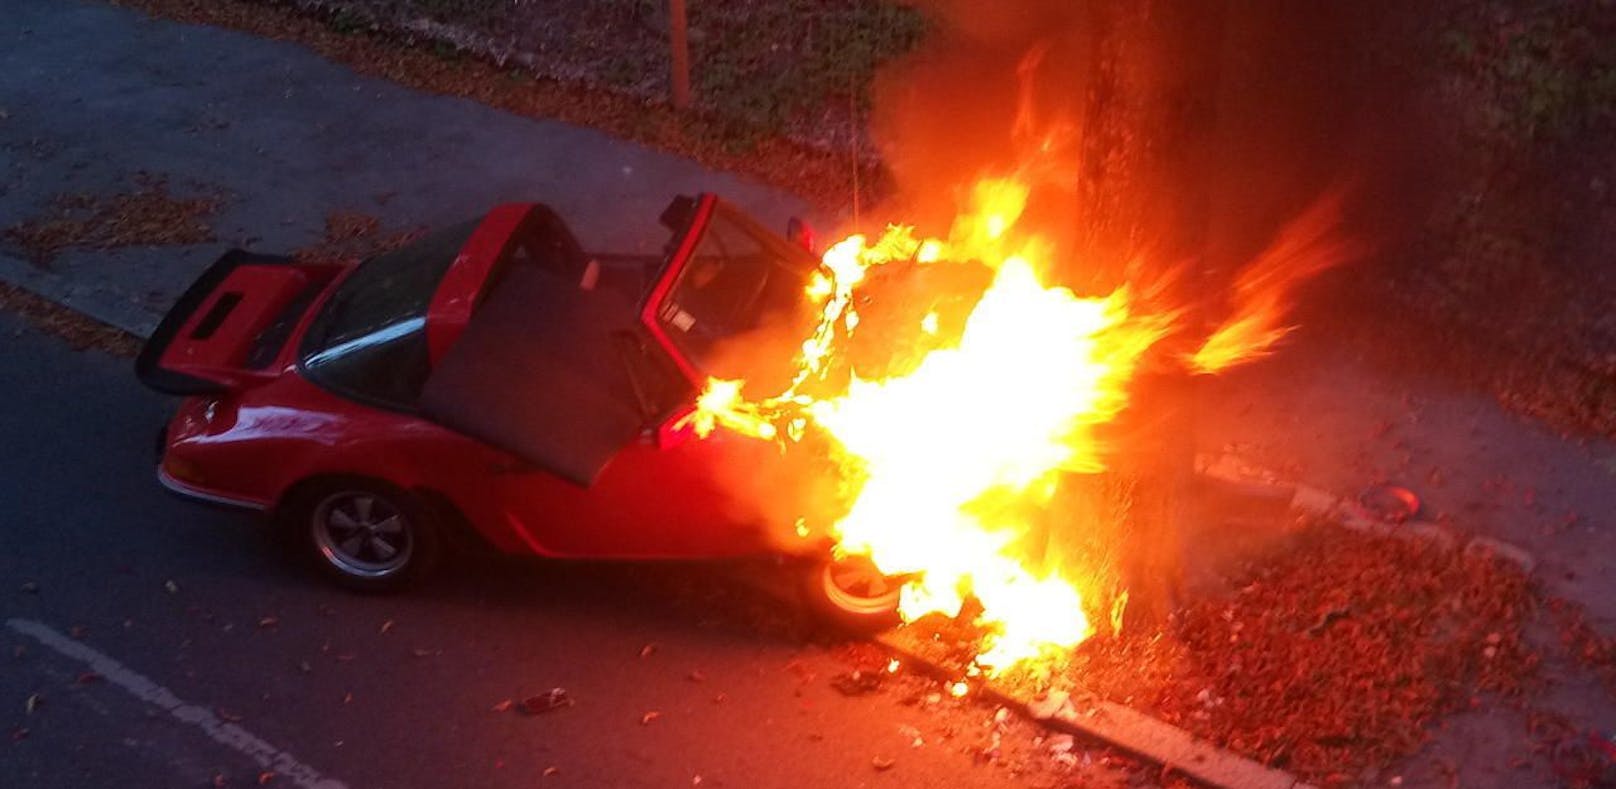 Der rote Sportwagen brannte nach dem Crash völlig aus.